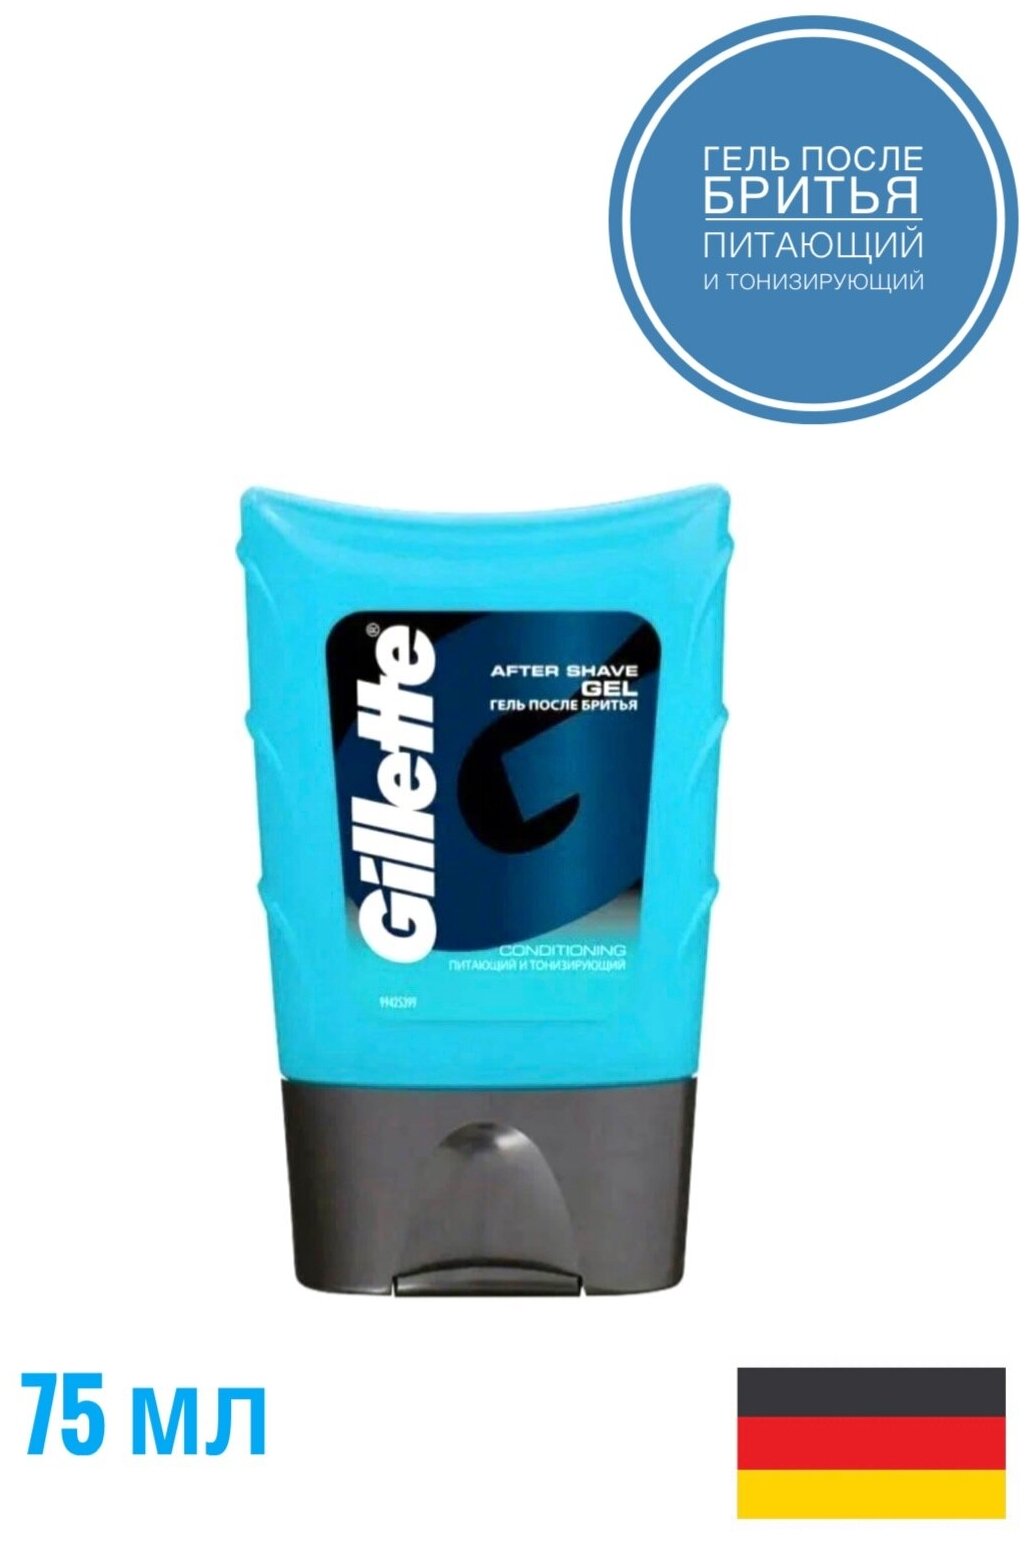 Питающий и тонизирующий гель после бритья Gillette Series Aftershave Gel Conditioning, 75 мл - фото №11